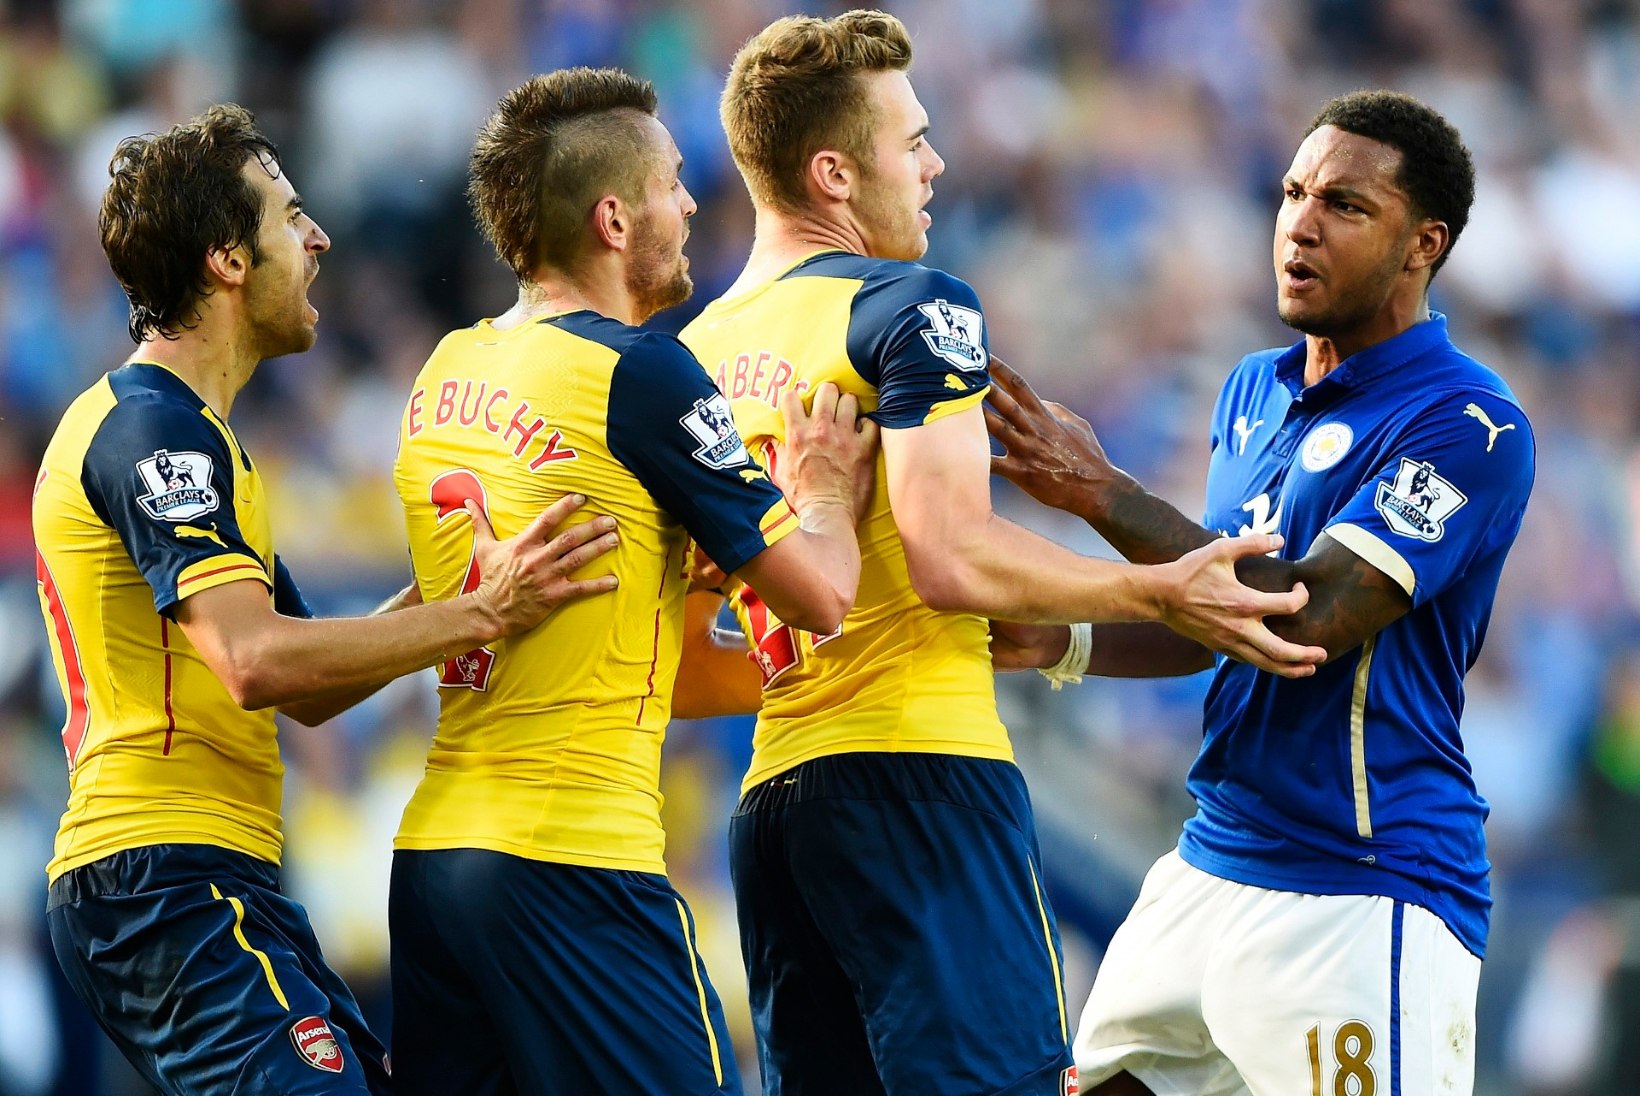 FOTOD: Arsenal jäi Leicesteri vastu võiduta